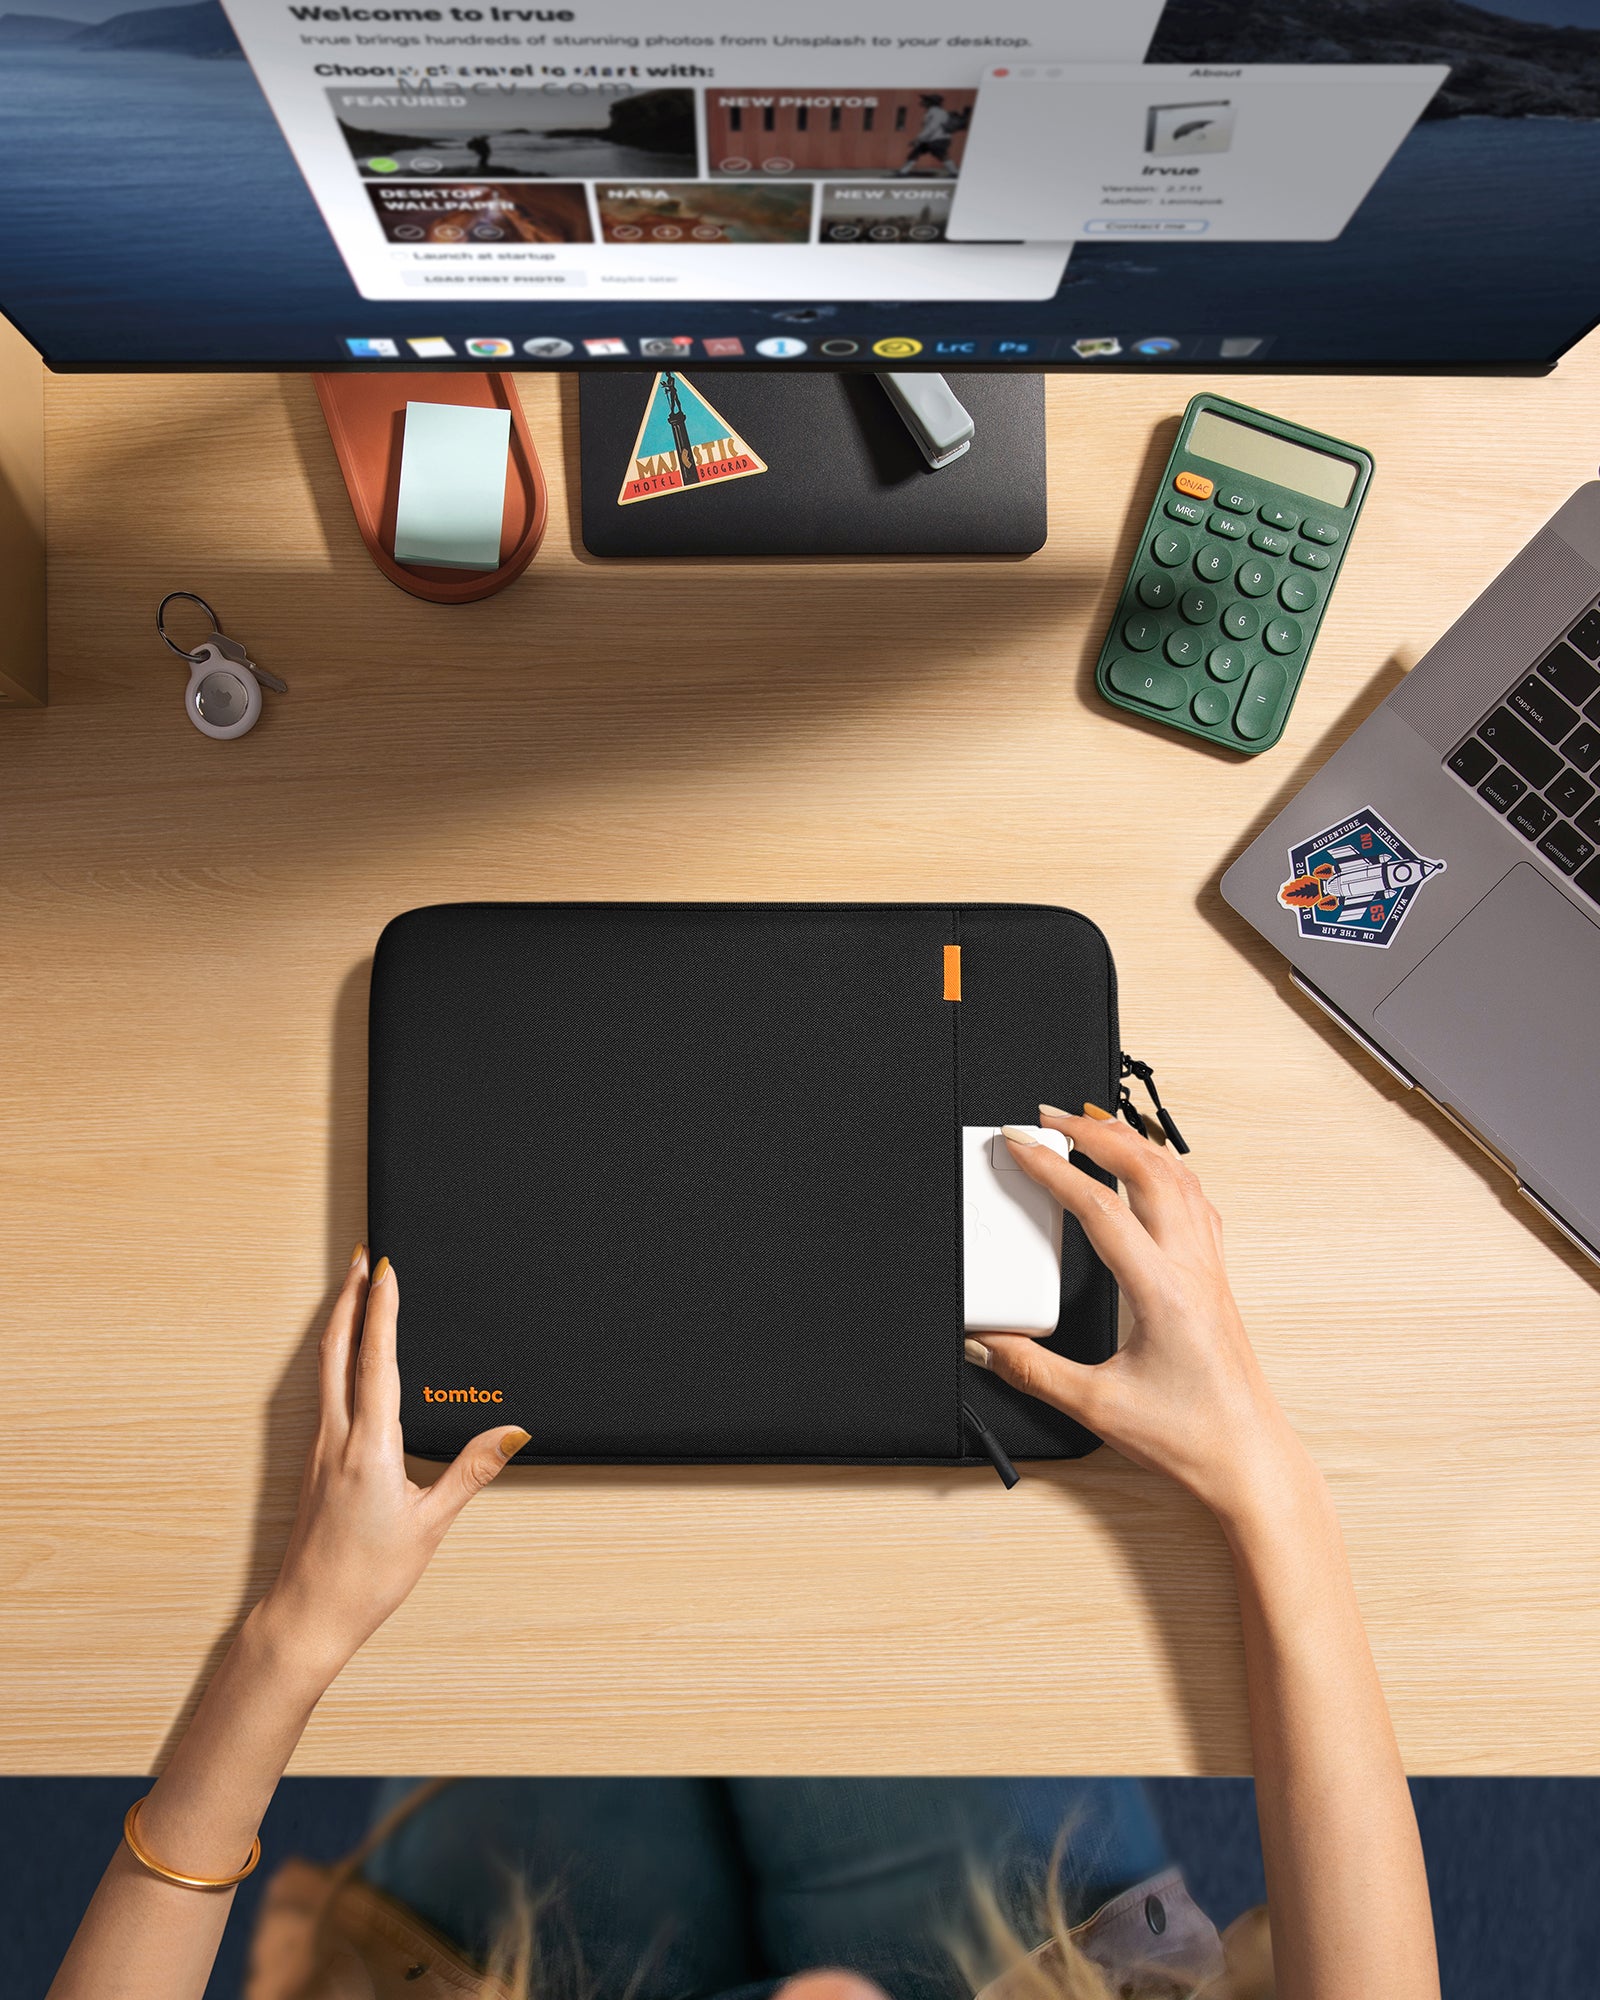 Defender-A13 Laptop Hülle für 16-Zoll MacBook Pro